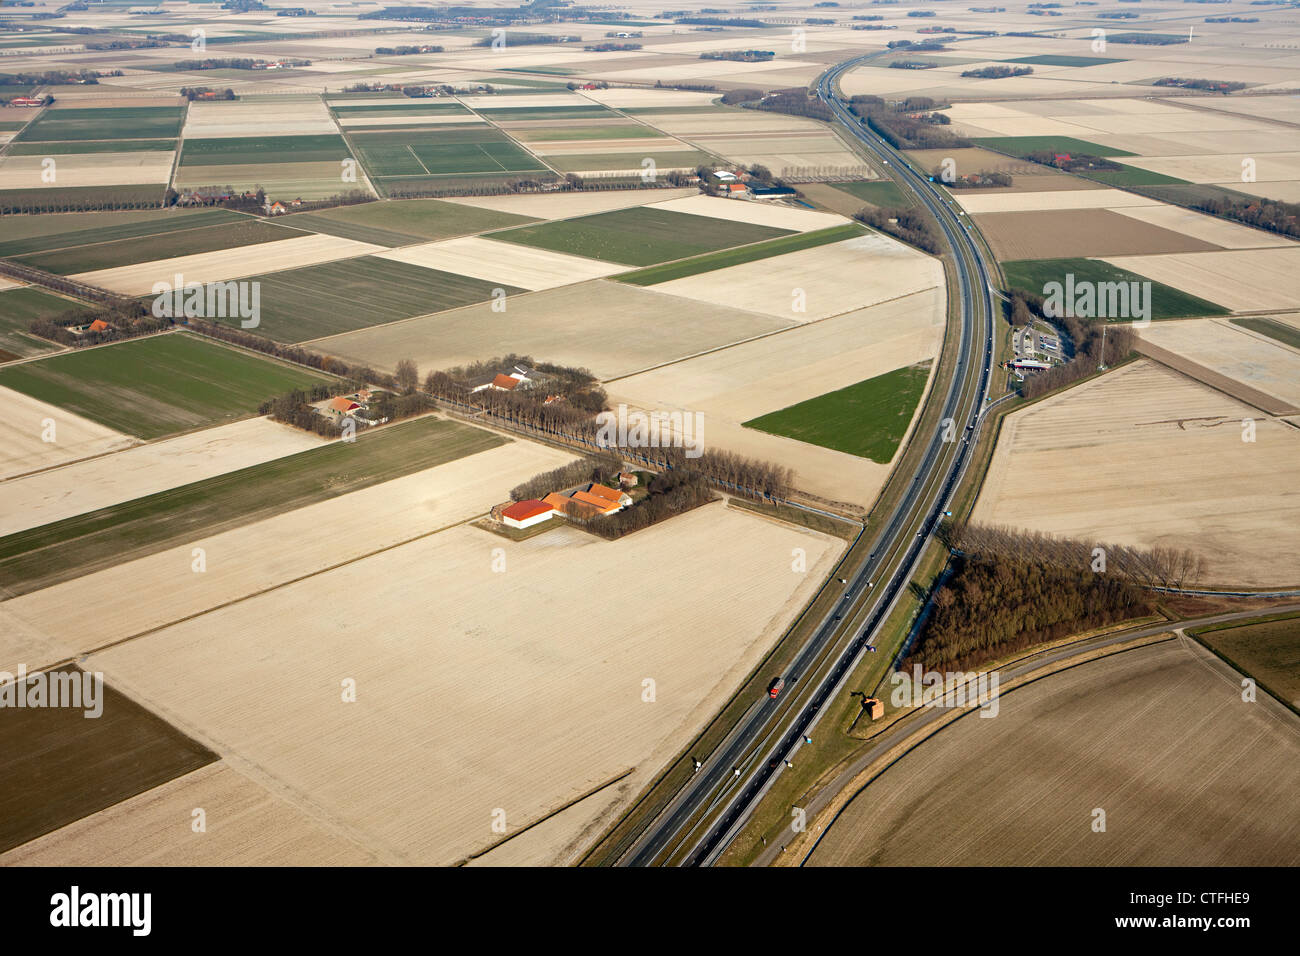 Les Pays-Bas, Nagele, de fermes et de terres agricoles de Flevopolder. L'autoroute A6. Vue aérienne. Banque D'Images